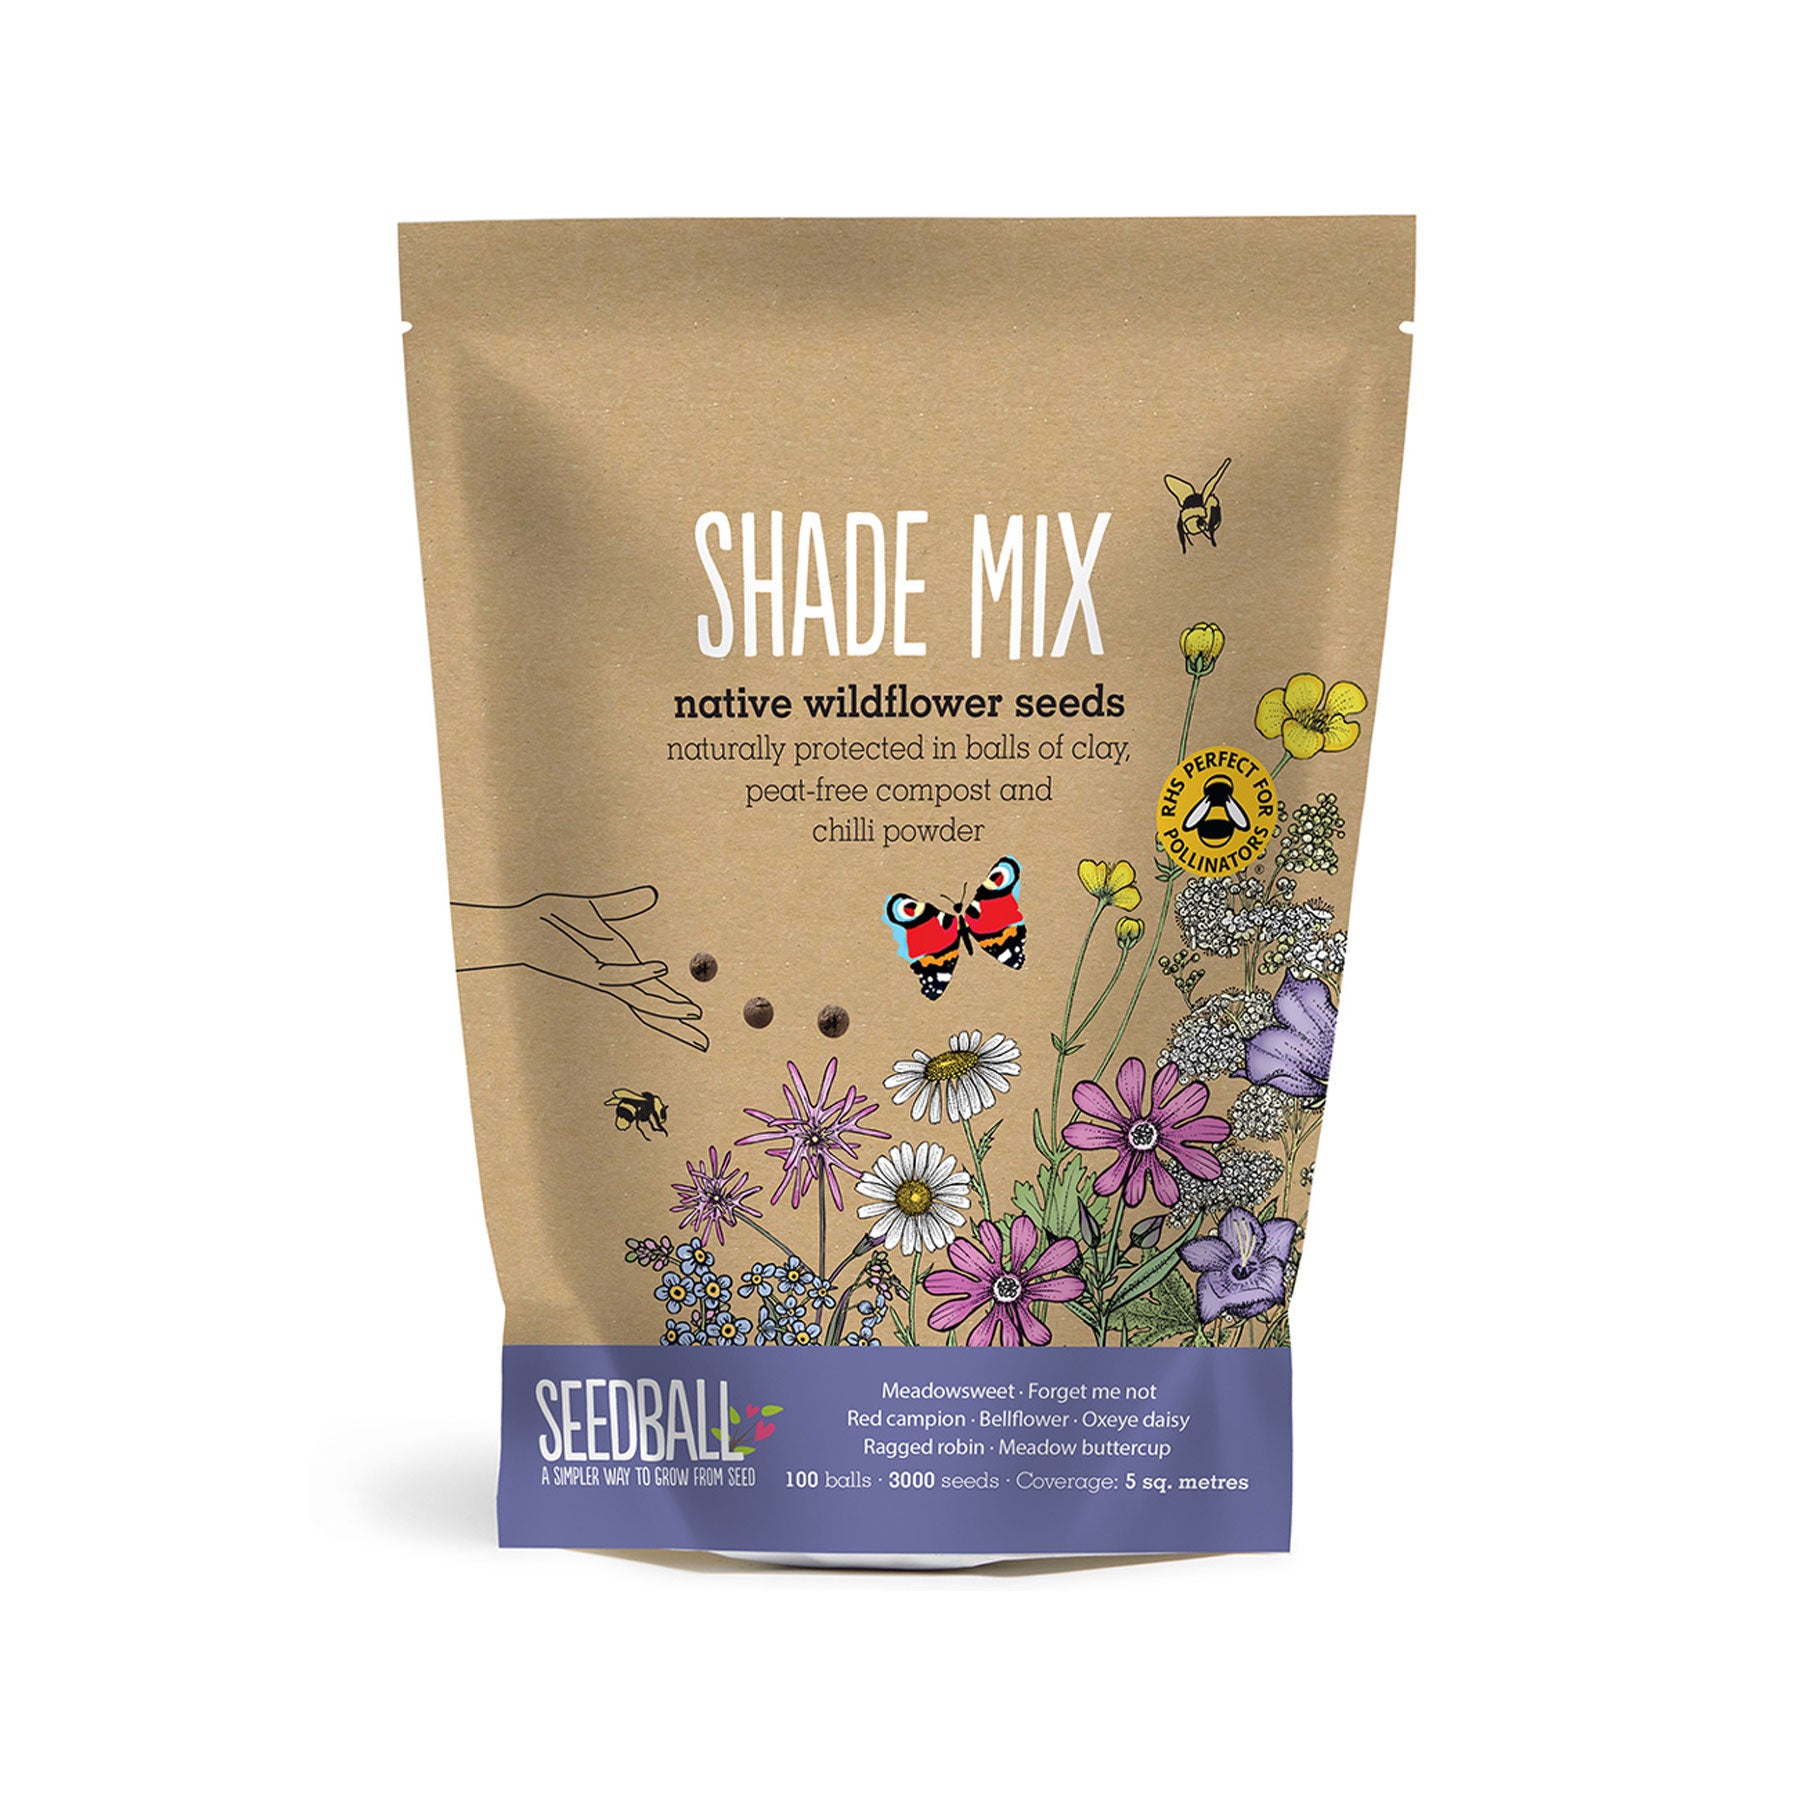 Shade mix grab bag